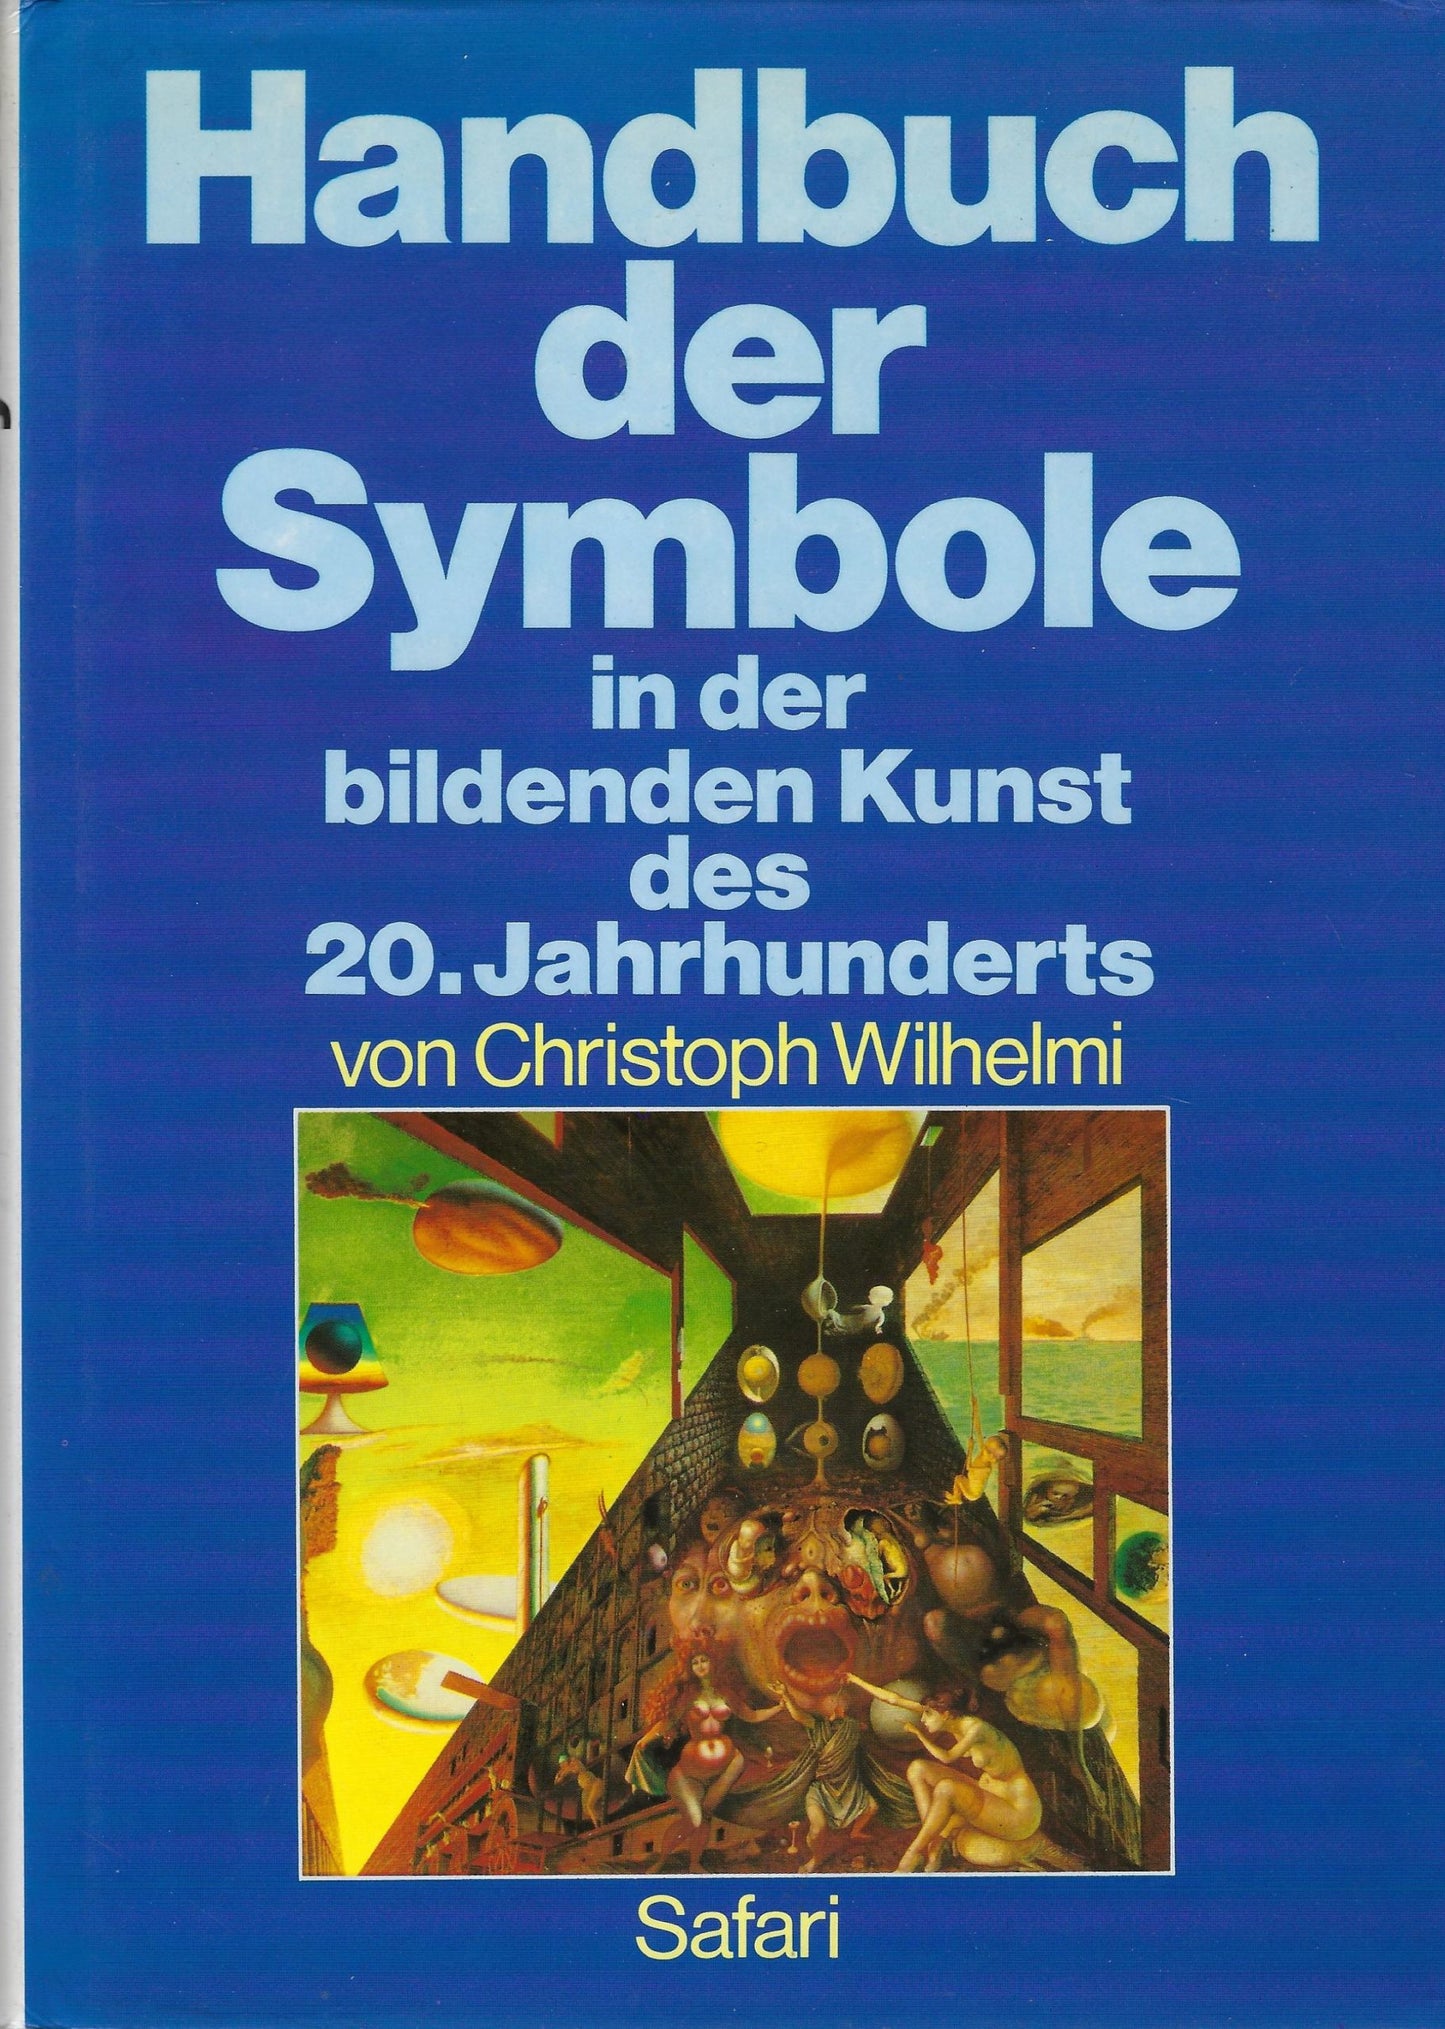 Handbuch der Symbole in der Kunst des 20. Jahrhunderts